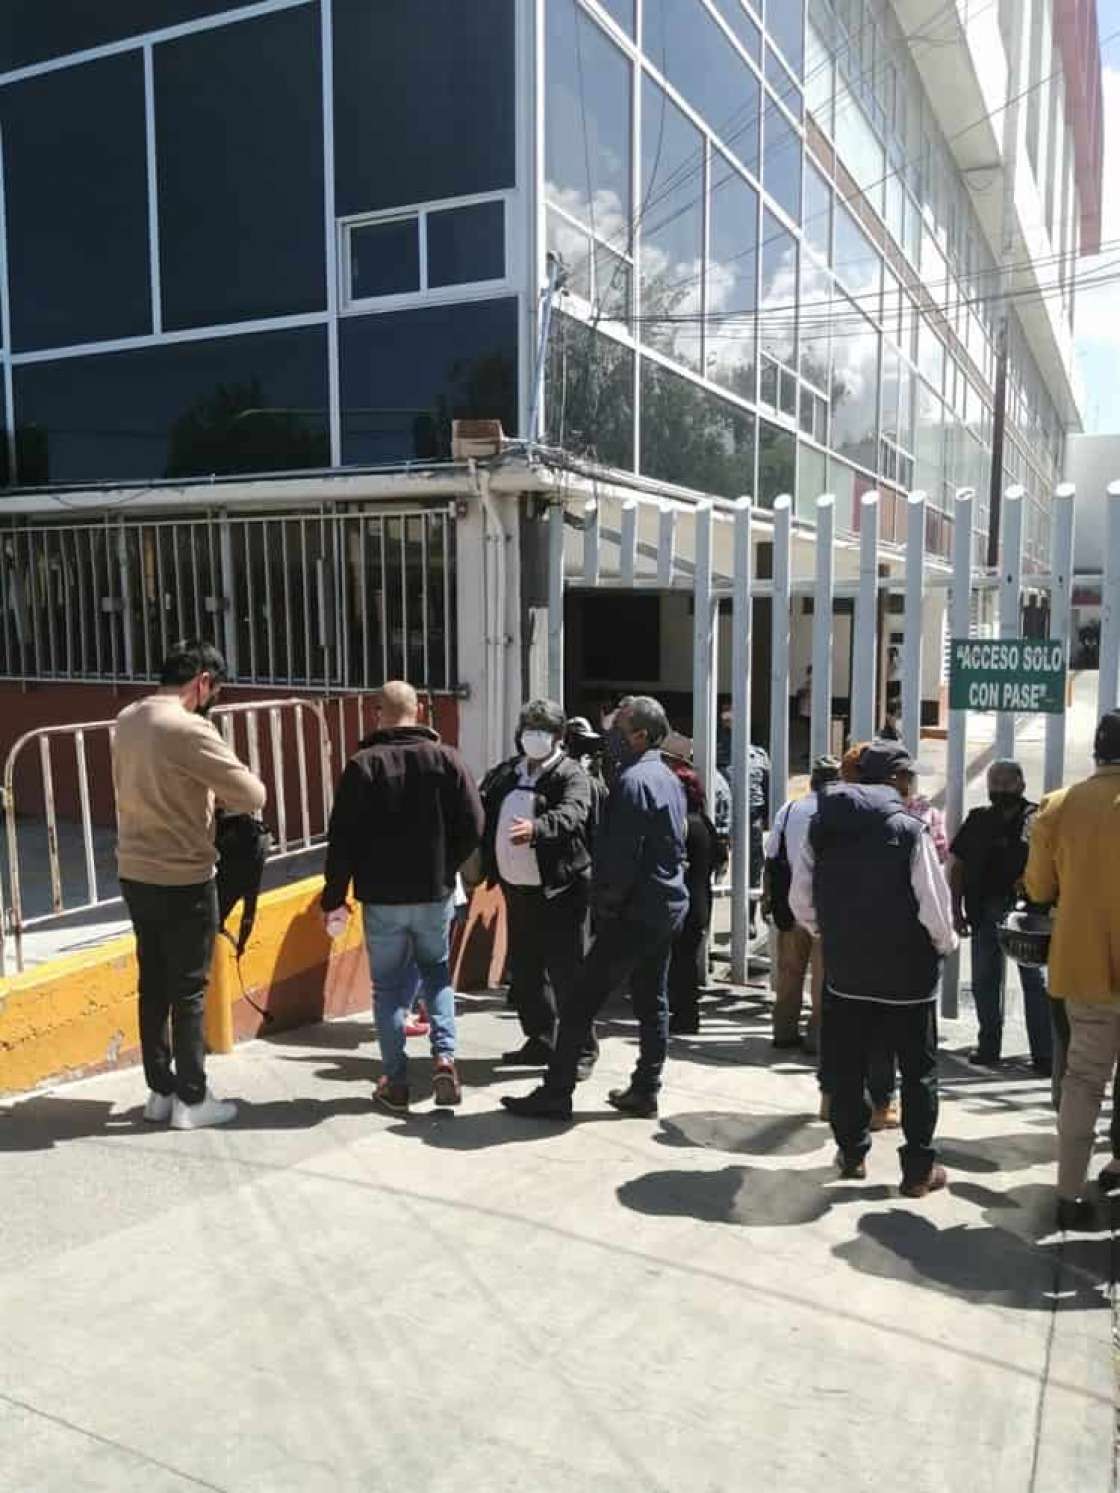 Retomarán policías estatales diálogo, tras bloqueo de Palacio de Gobierno